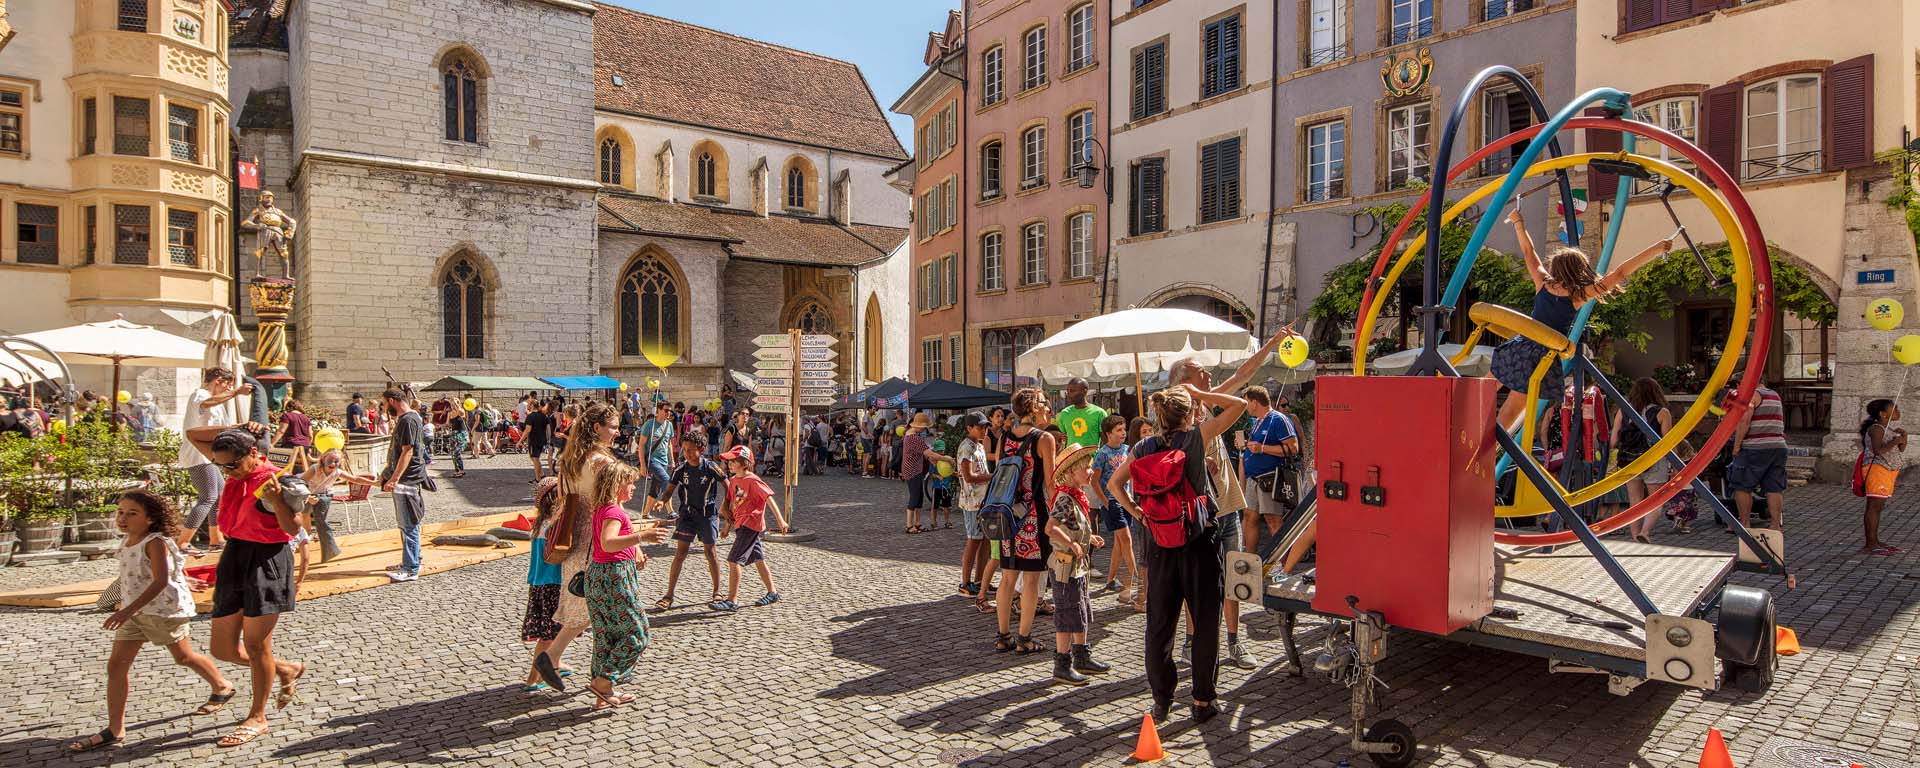 Kinderfest Altstadt Biel Bienne